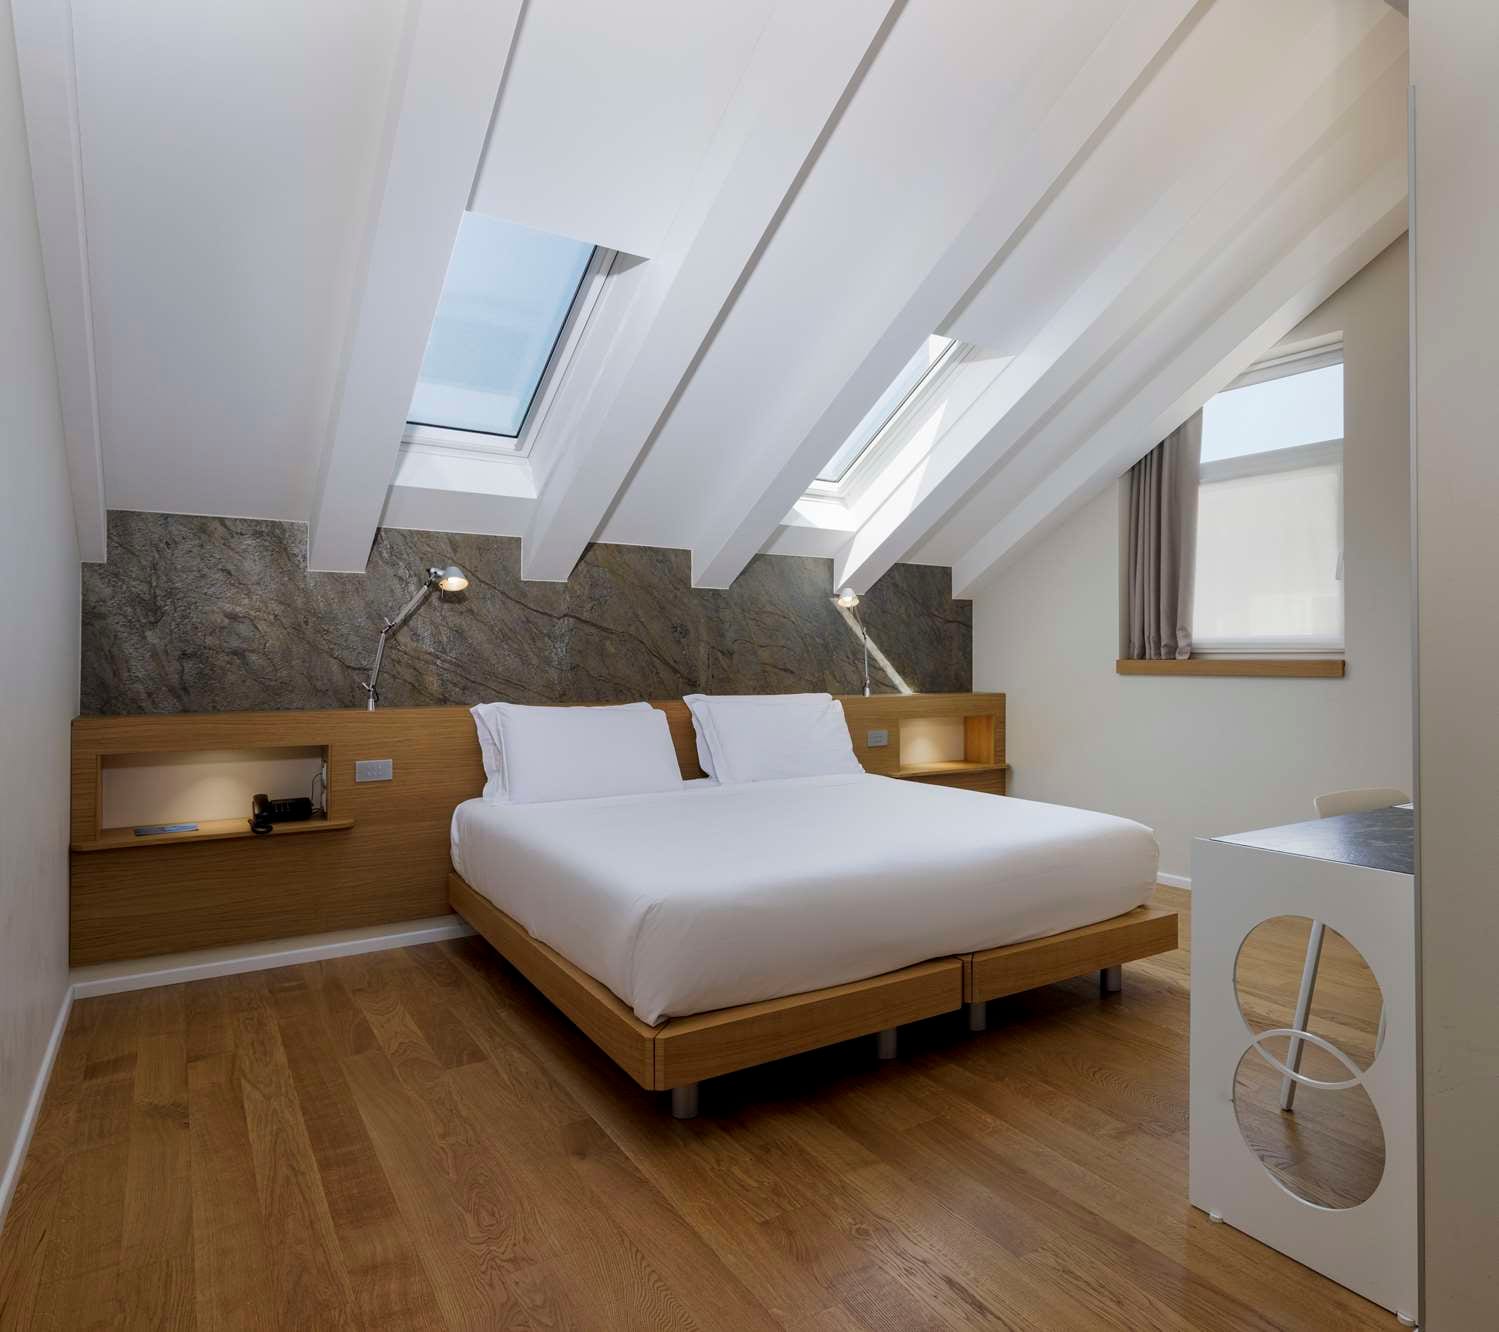 2 Minimalist Bedroom Looks: Bedroom Ideas for Summer - VIV & TIM